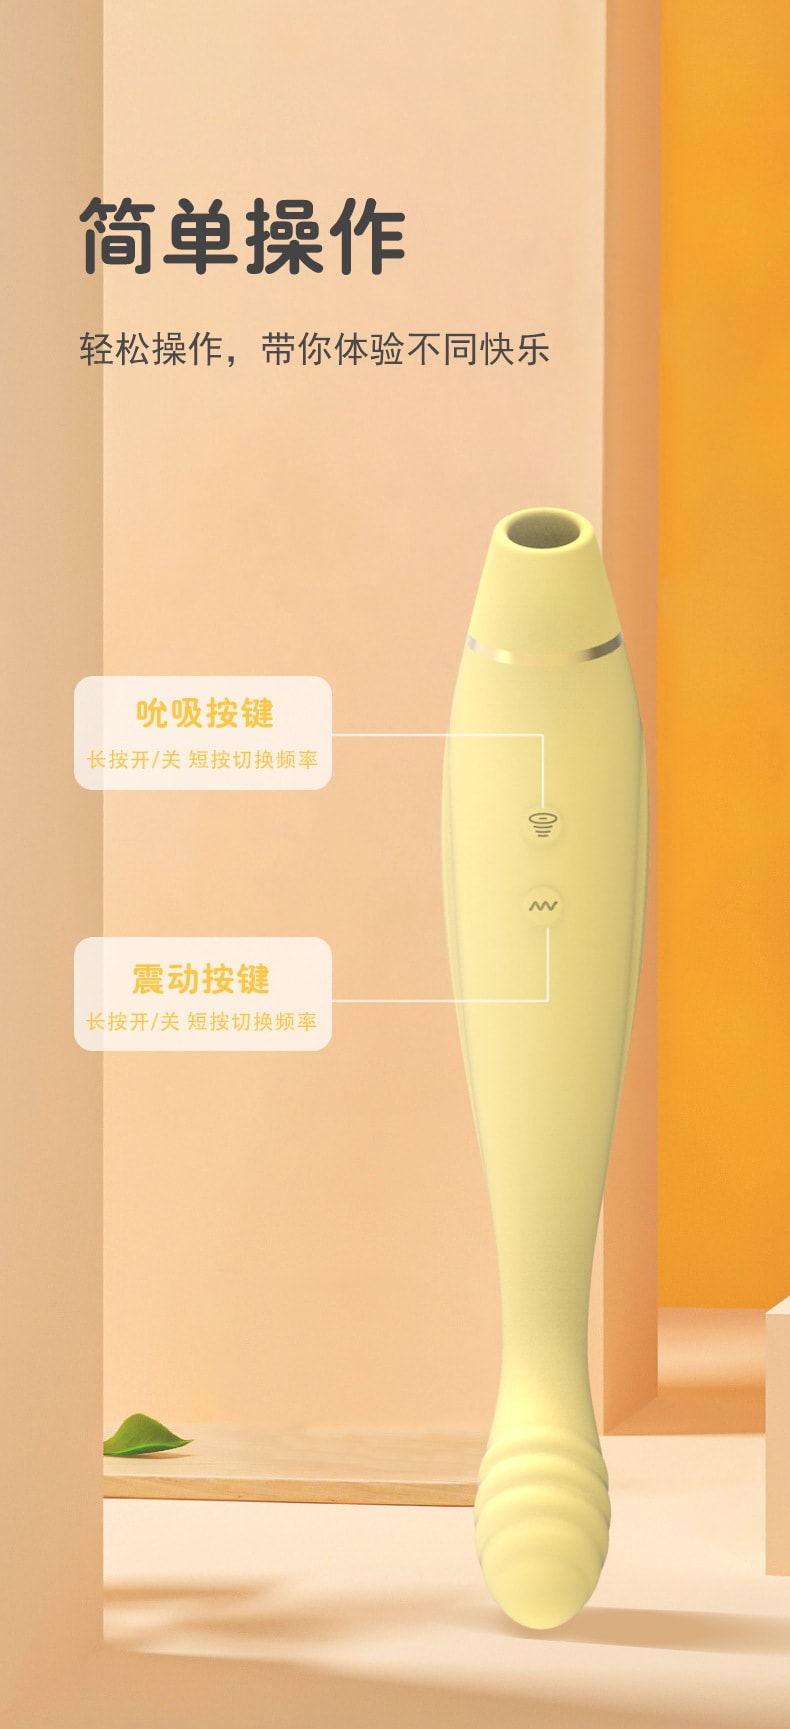 【中国直邮】 吸吸女用10频双头震动棒 成人用品 柠檬黄